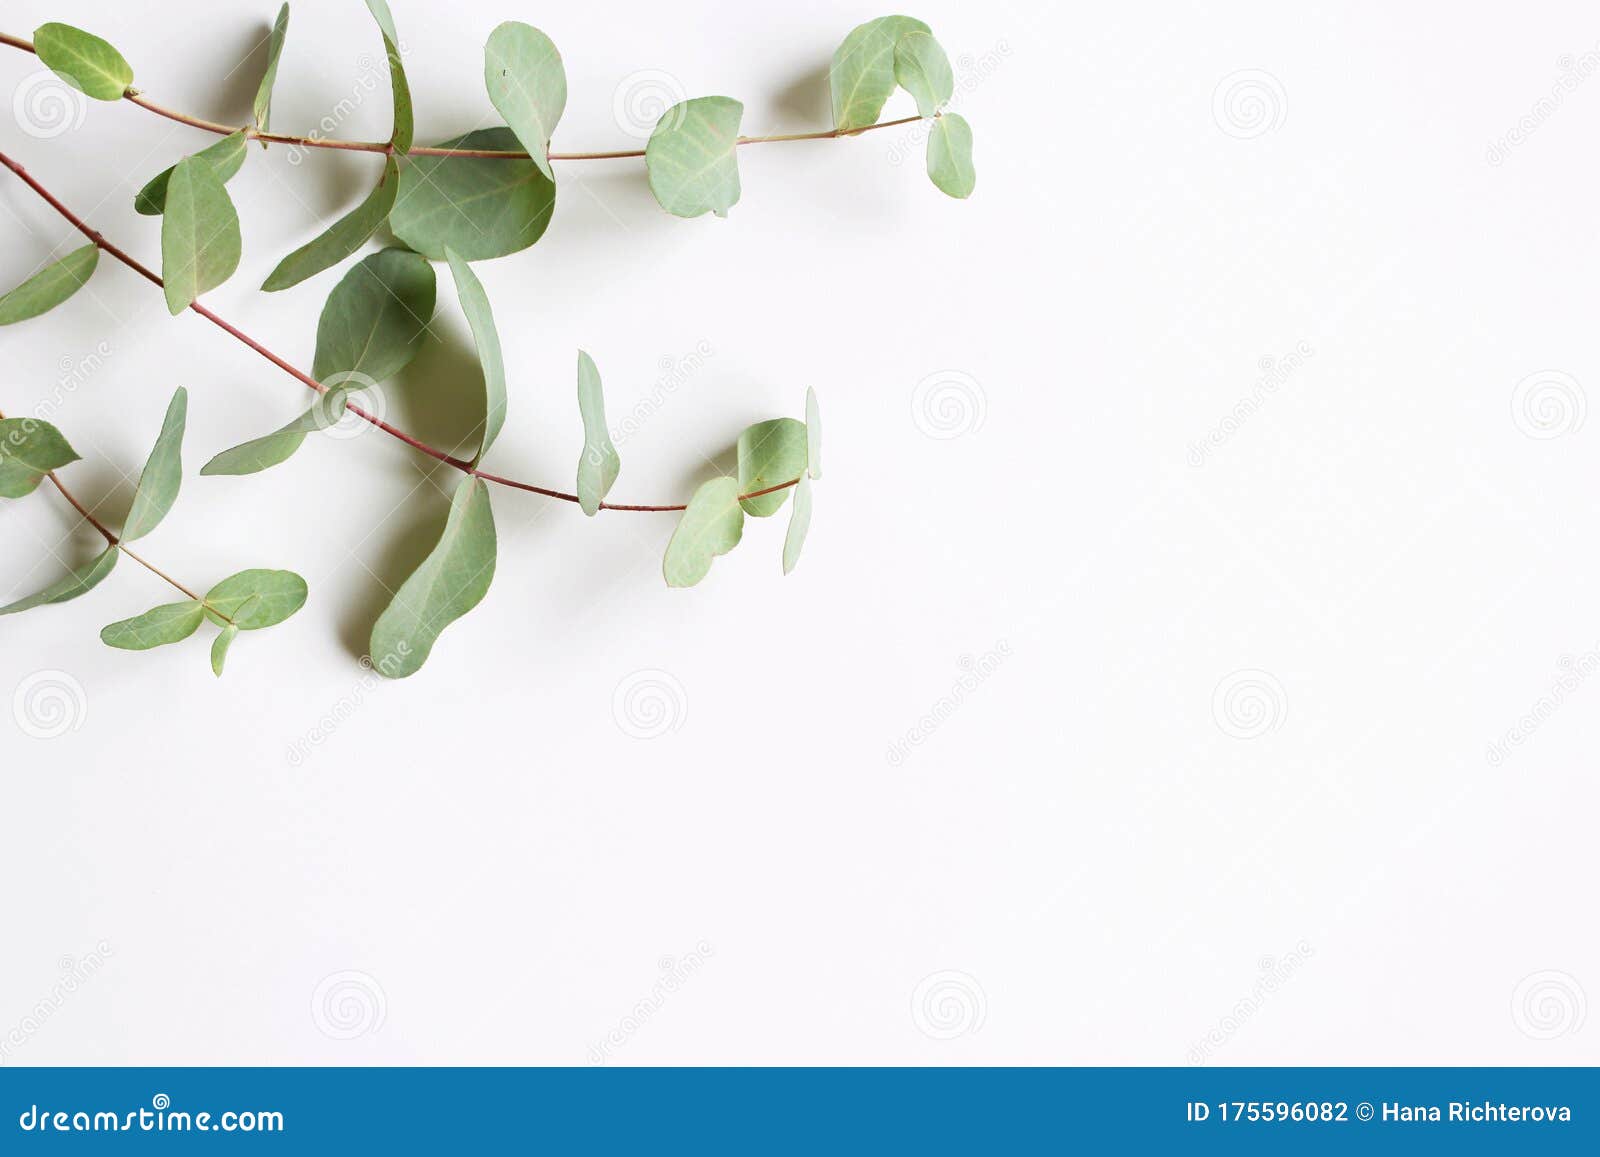 Kaderhoek Gemaakt Van Groene Eucalyptusbladeren En Takken Op Witte  Achtergrond. Florale Samenstelling. Feminievormig Stock Foto - Image Of  Macro, Mooi: 175596082